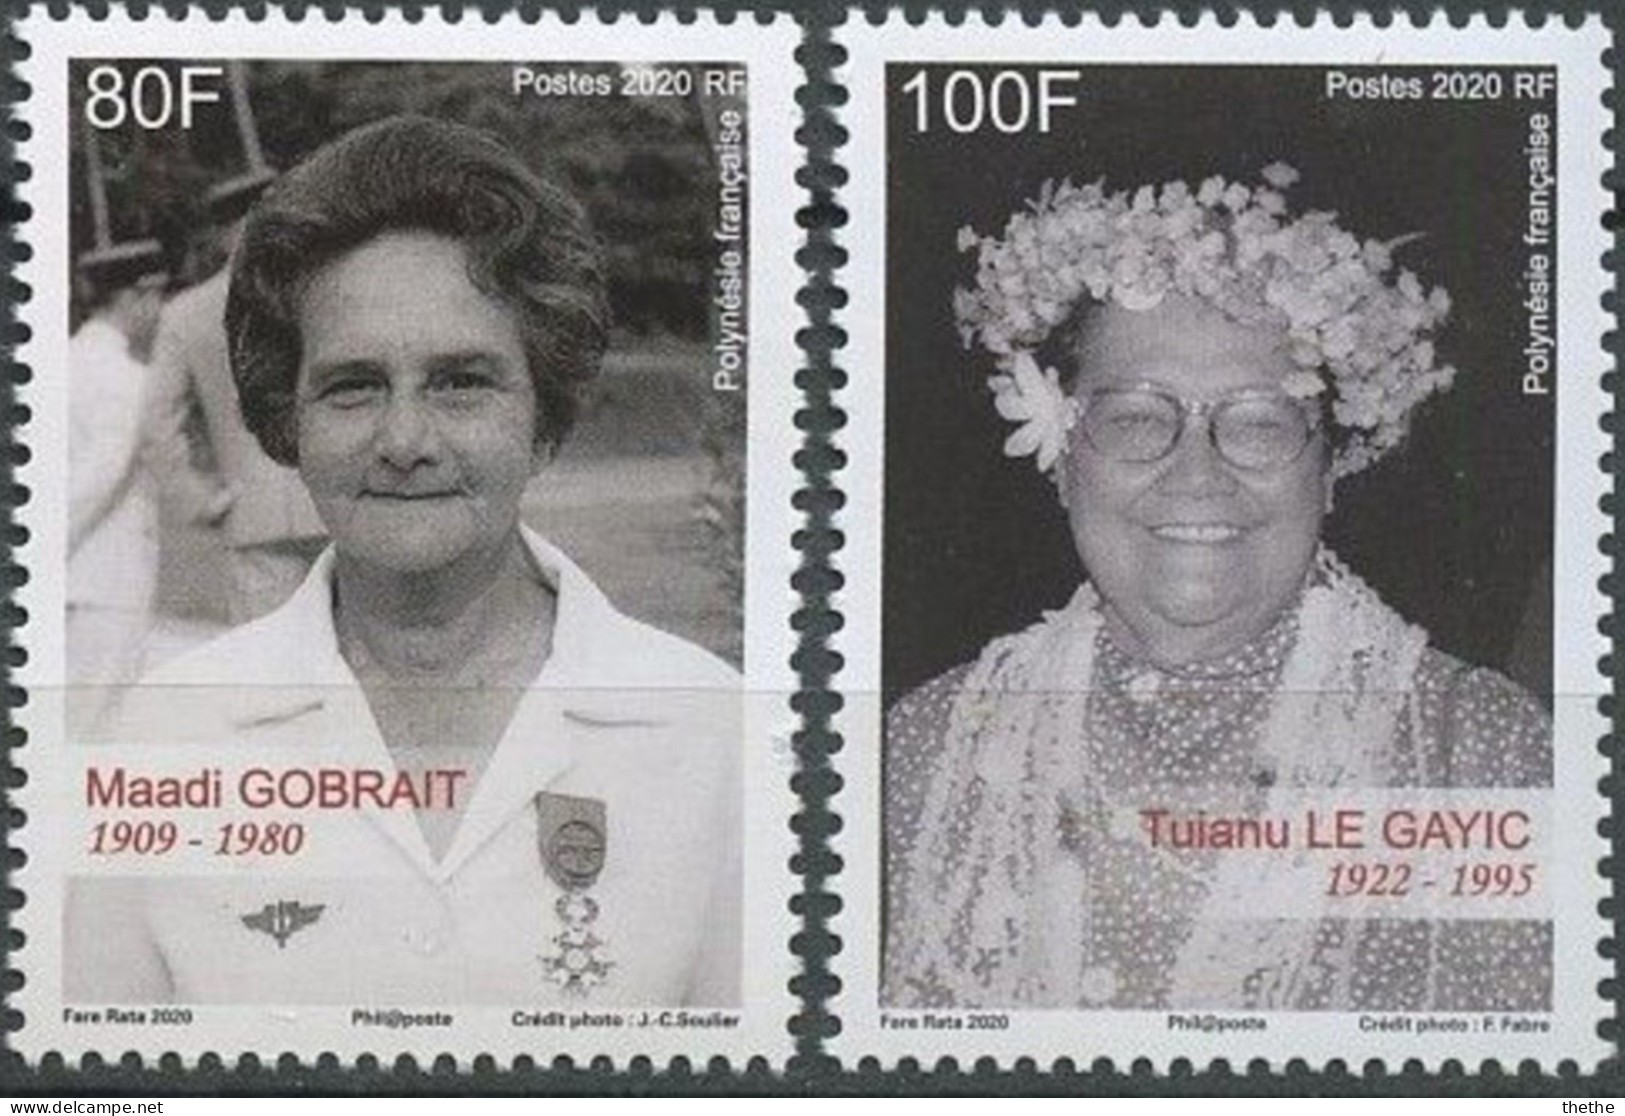 POLYNESIE - Maadi Gobrait (1909-1980), Infirmière Et Militante Politique - Tuianu Le Gayic(1922-1995), Militante Pour Le - Unused Stamps